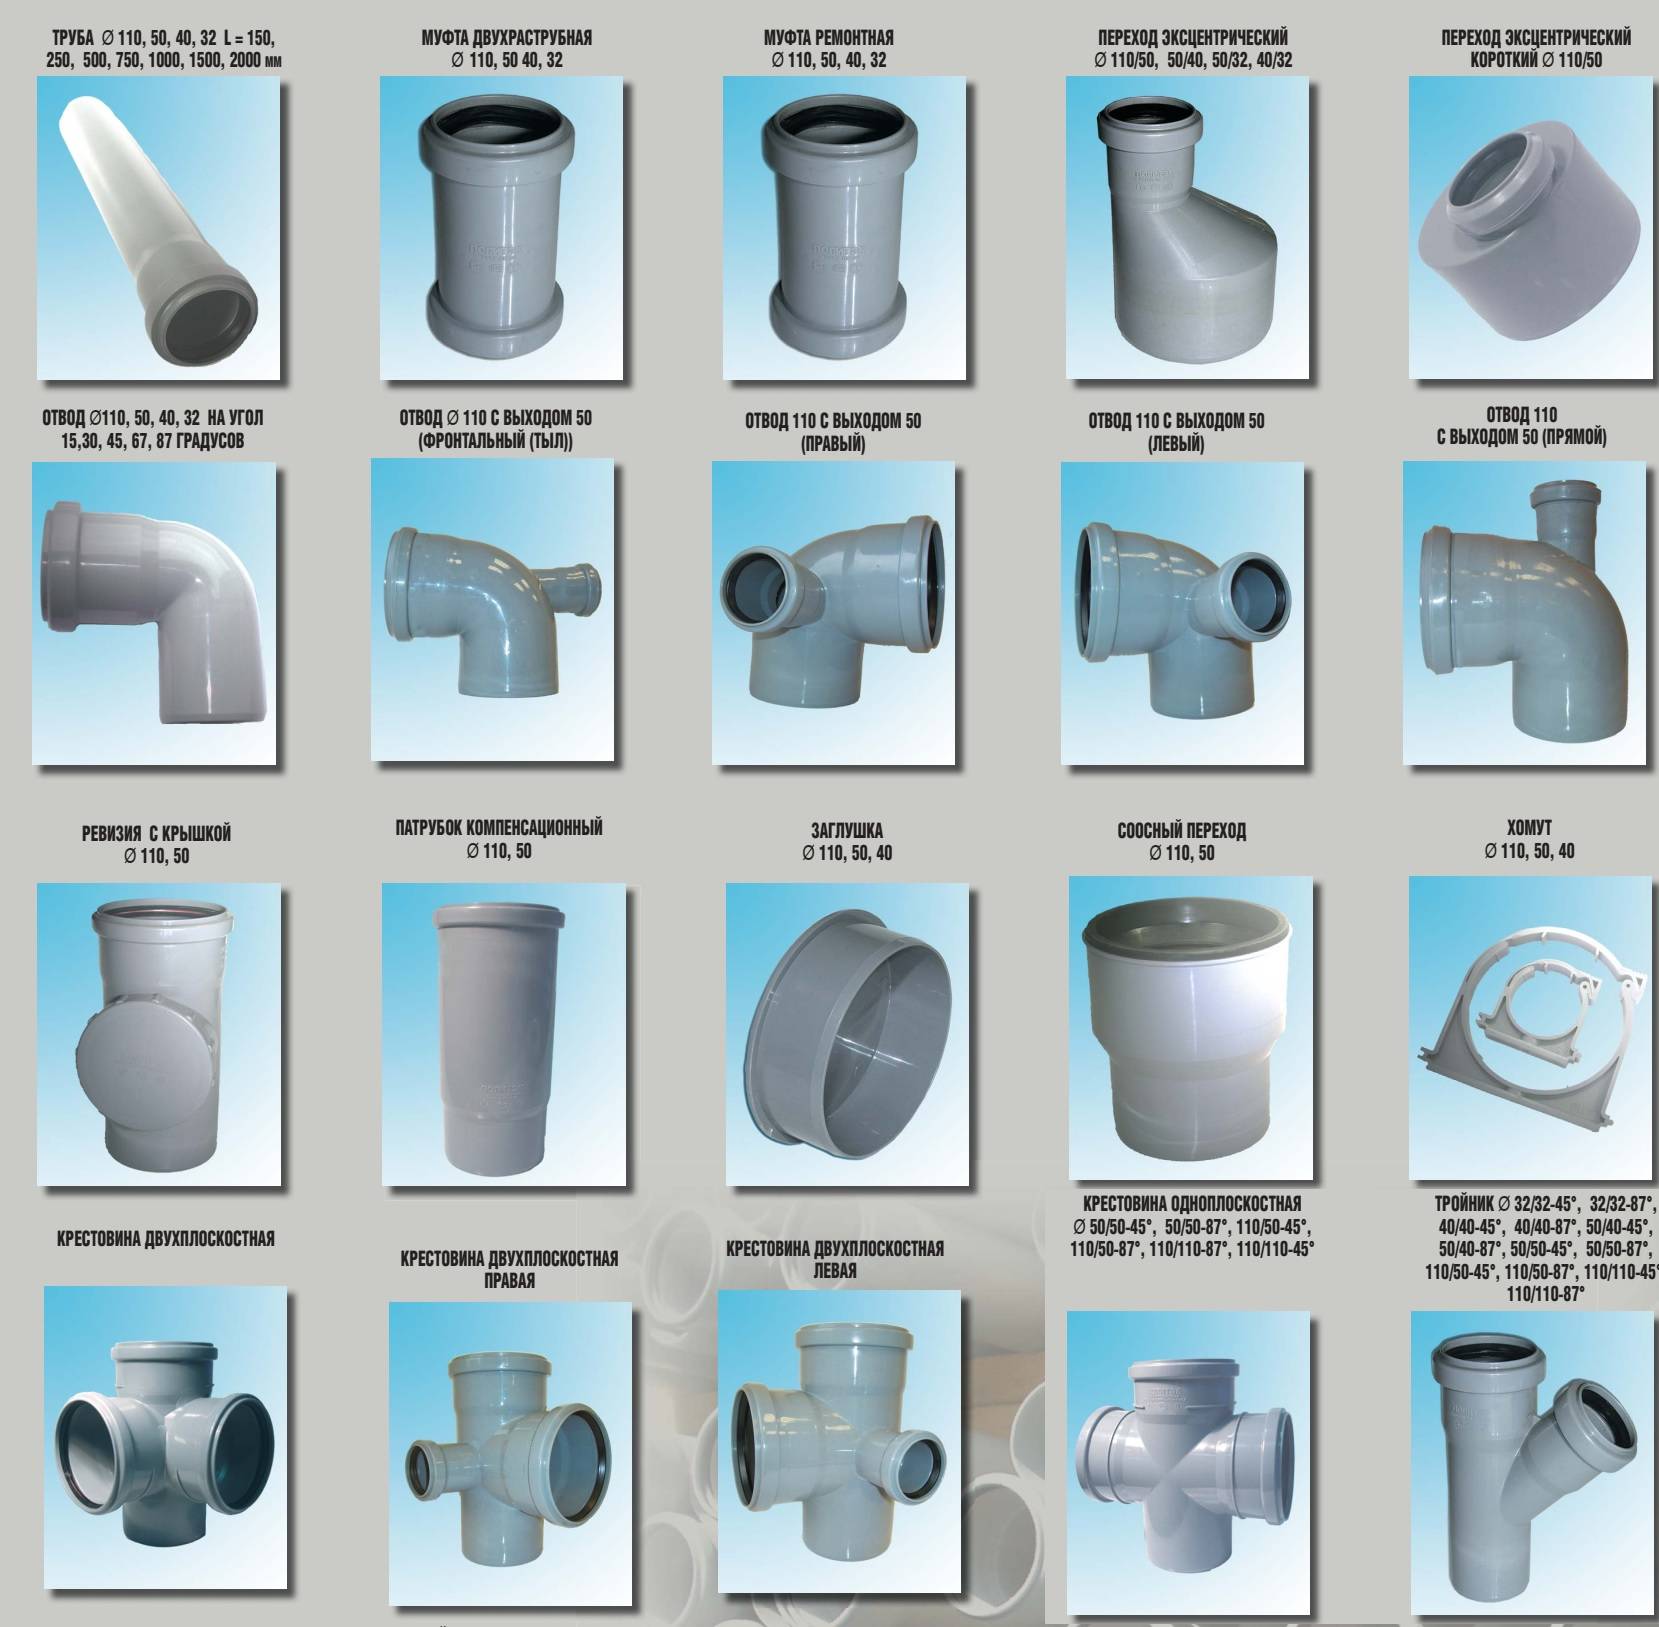 Пластиковые трубы для канализации: характеристики и монтаж